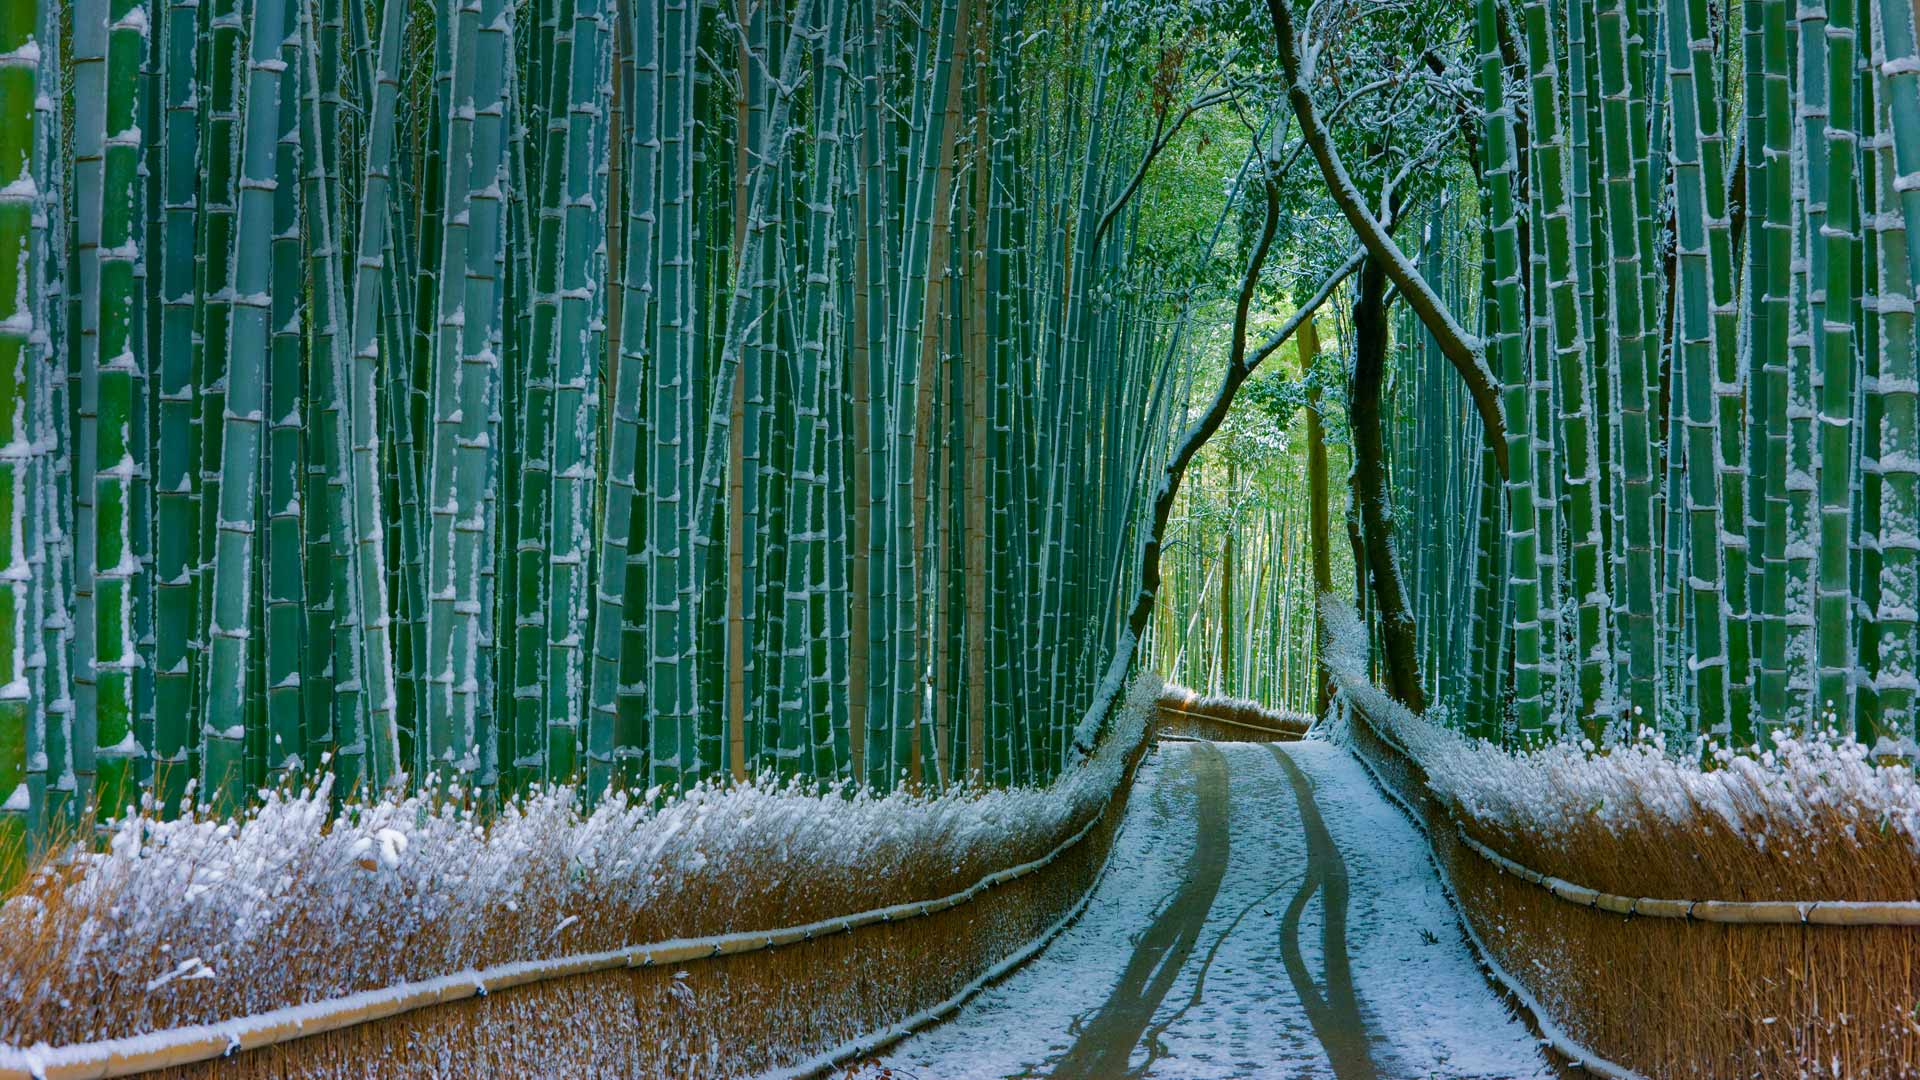 Kyoto Bamboo